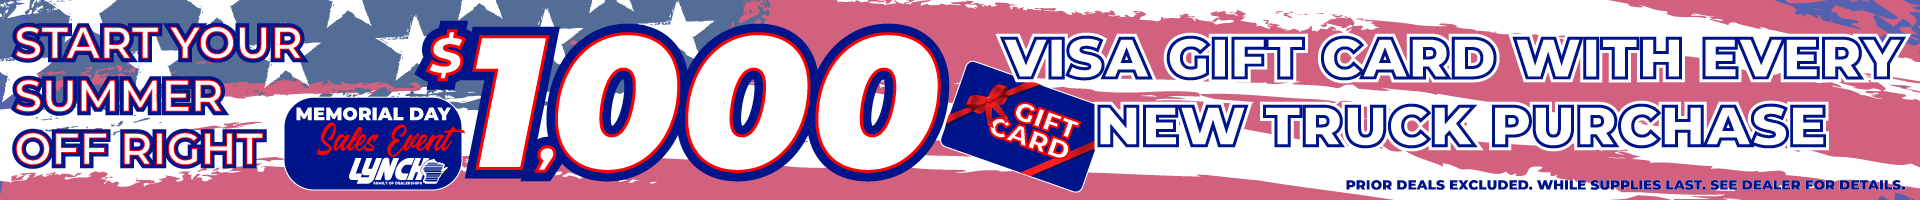 Visa GiftCard Giveaway May